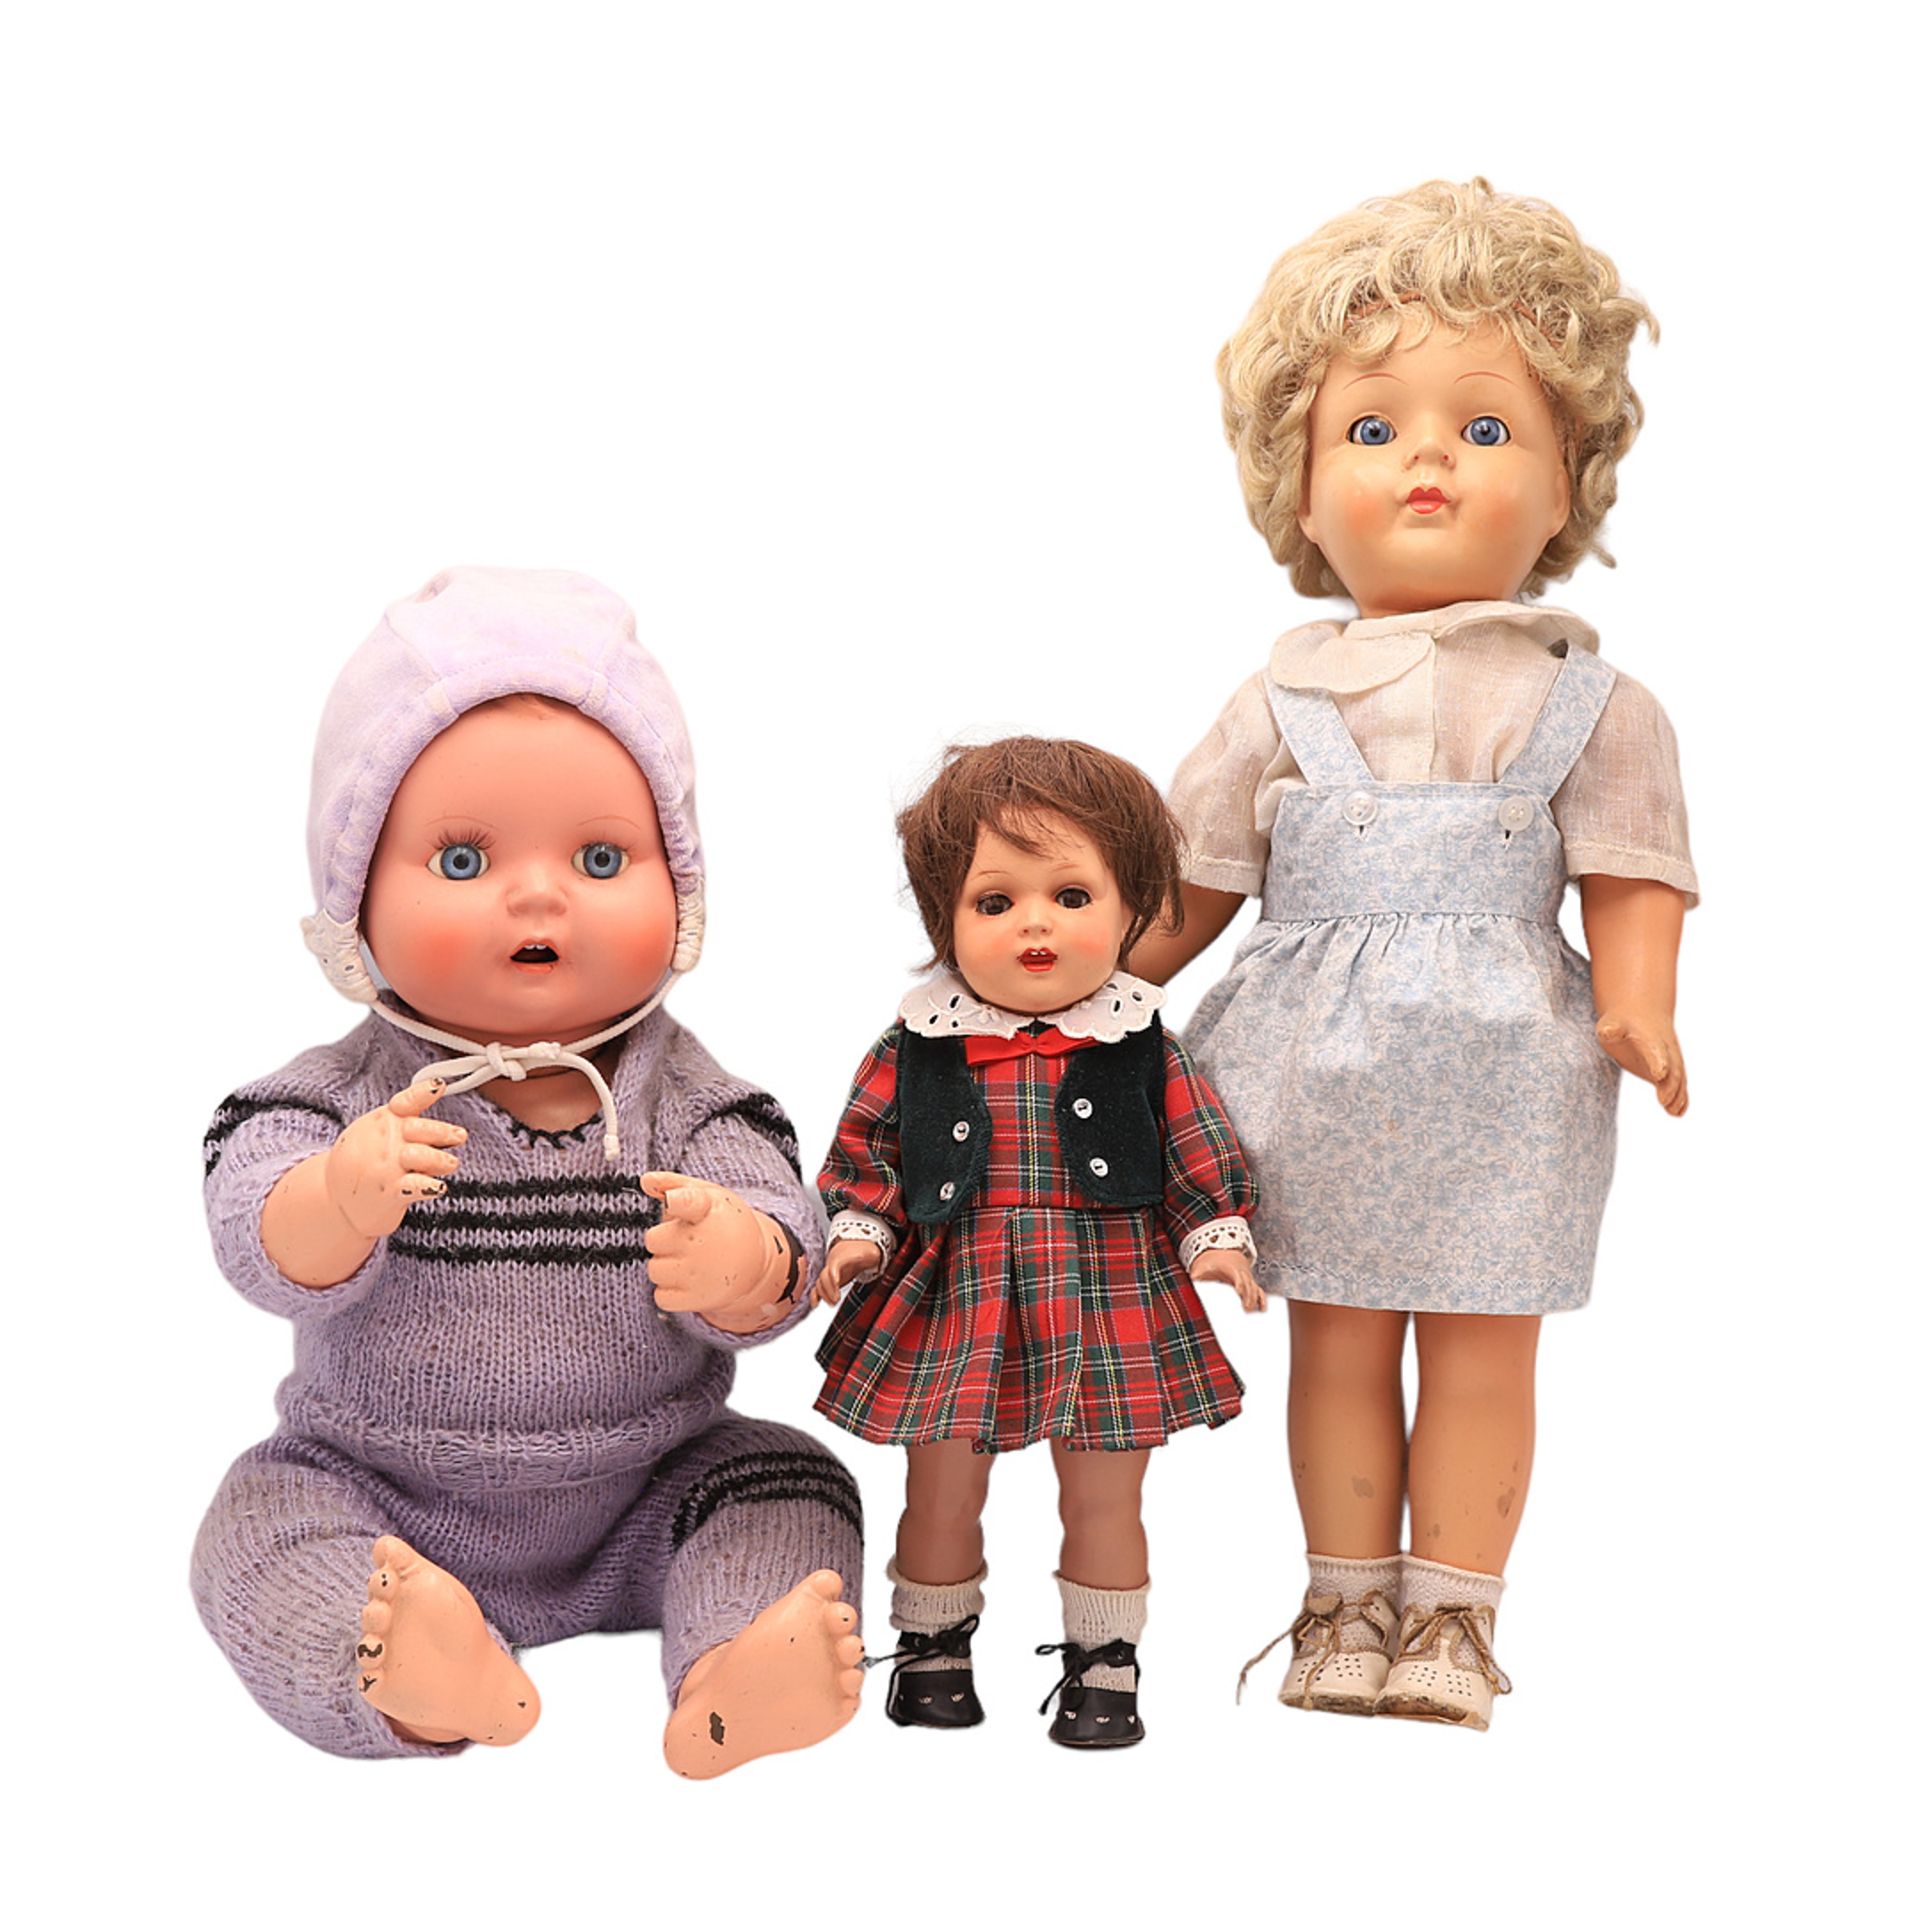 Drei Puppen in verschiedenen Größen